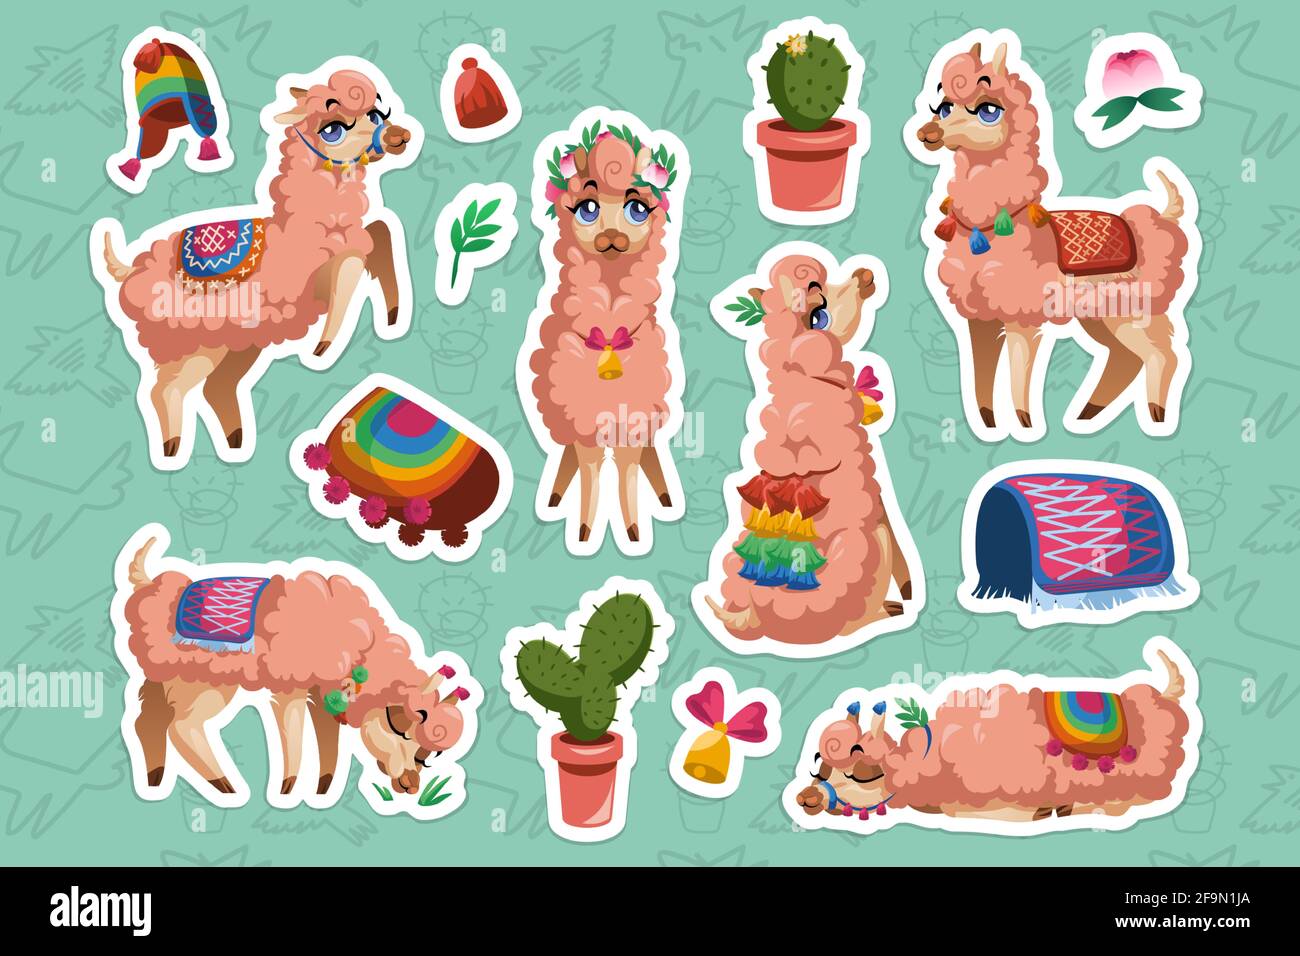 Juego de pegatinas con Llama, Perú alpaca caricatura animal. La mascota de Lama mexicano con cara linda usa borlas en las orejas y manta sentado, durmiendo, pastando y parando parches aislados cortados Ilustración del Vector